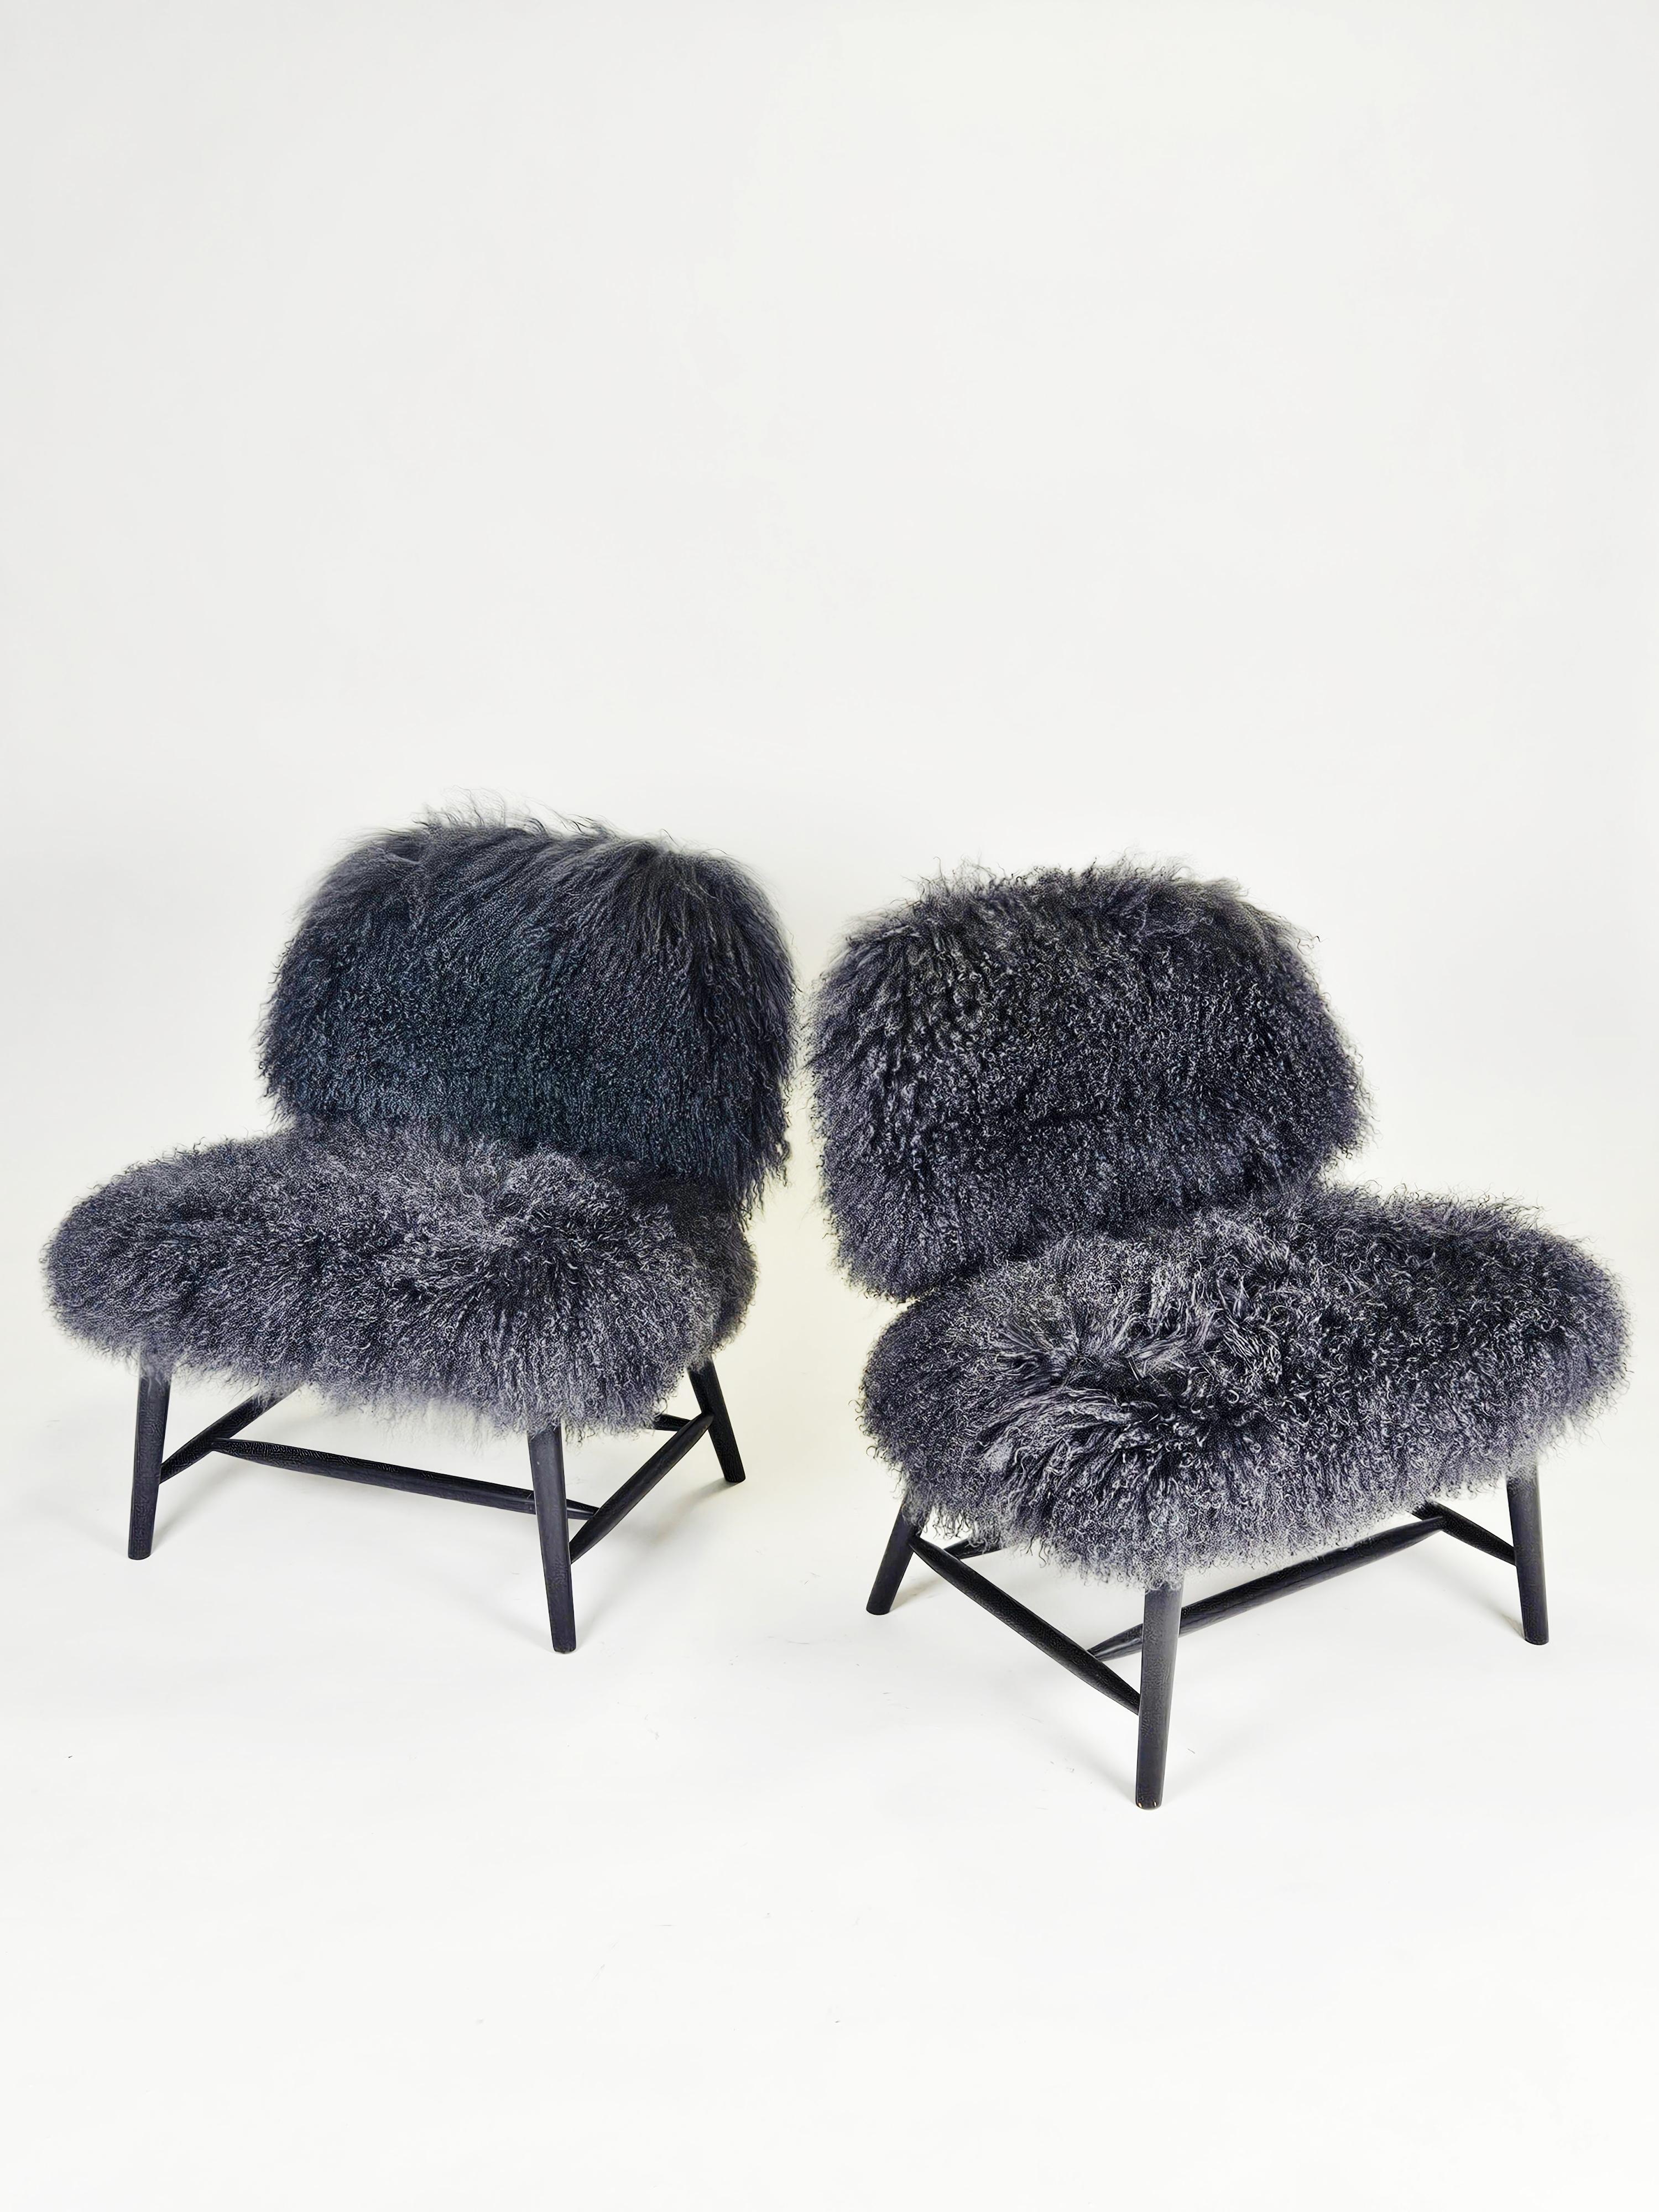 Paire de fauteuils conçus par Alf Svensson pour Bra Bohag, Ljungs Industrier, Suède, dans les années 1950. 

Le modèle s'appelle 